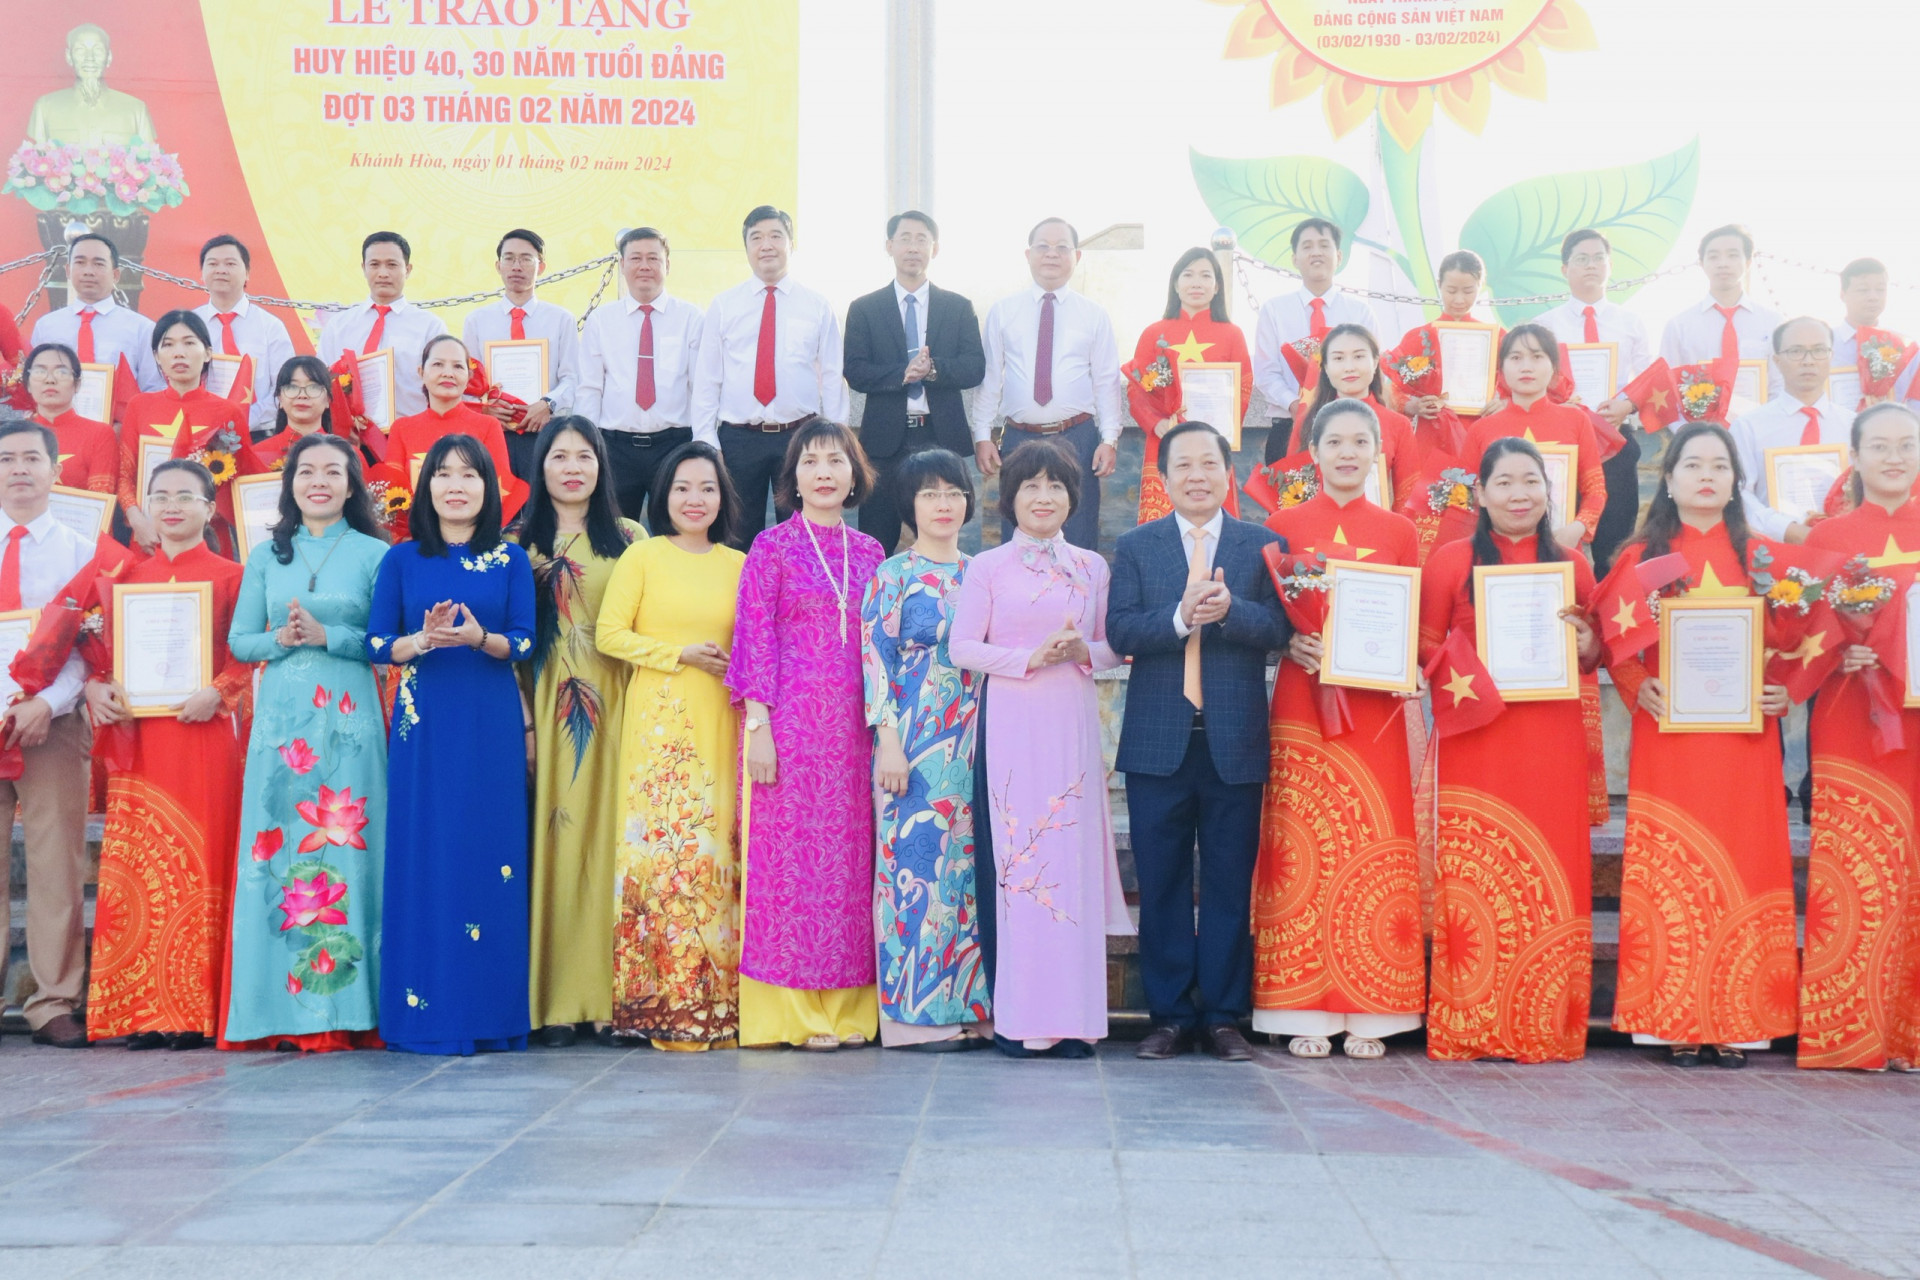 Phó Bí thư Tỉnh ủy Hà Quốc Trị cùng thường trực Đảng ủy Khối, lãnh đạo các sở, ban, ngành chúc mừng các đảng viên vừa được kết nạp Đảng trong đợt chào mừng 94 năm ngày thành lập Đảng Cộng sản Việt Nam.